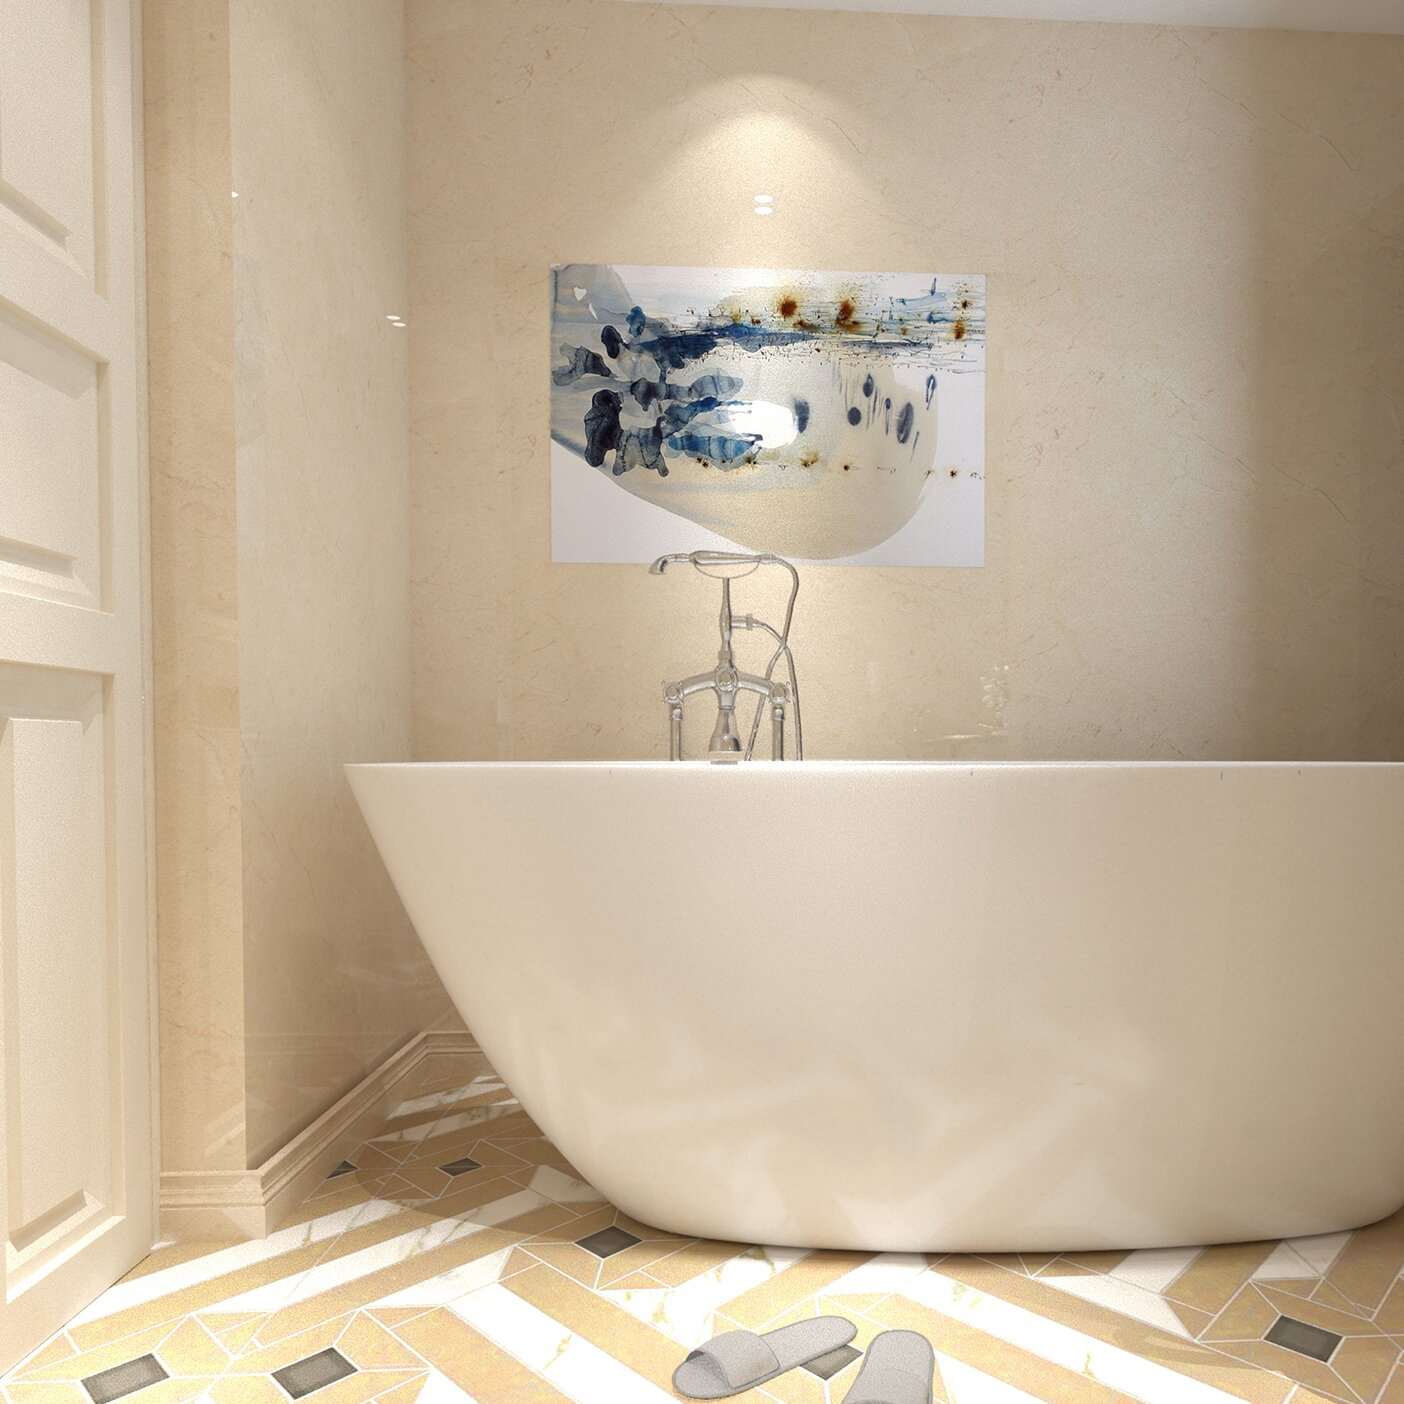 Stile di design del telefono Rubinetto per vasca da bagno con riempitivo per vasca indipendente montato a pavimento con 3 maniglie girevoli